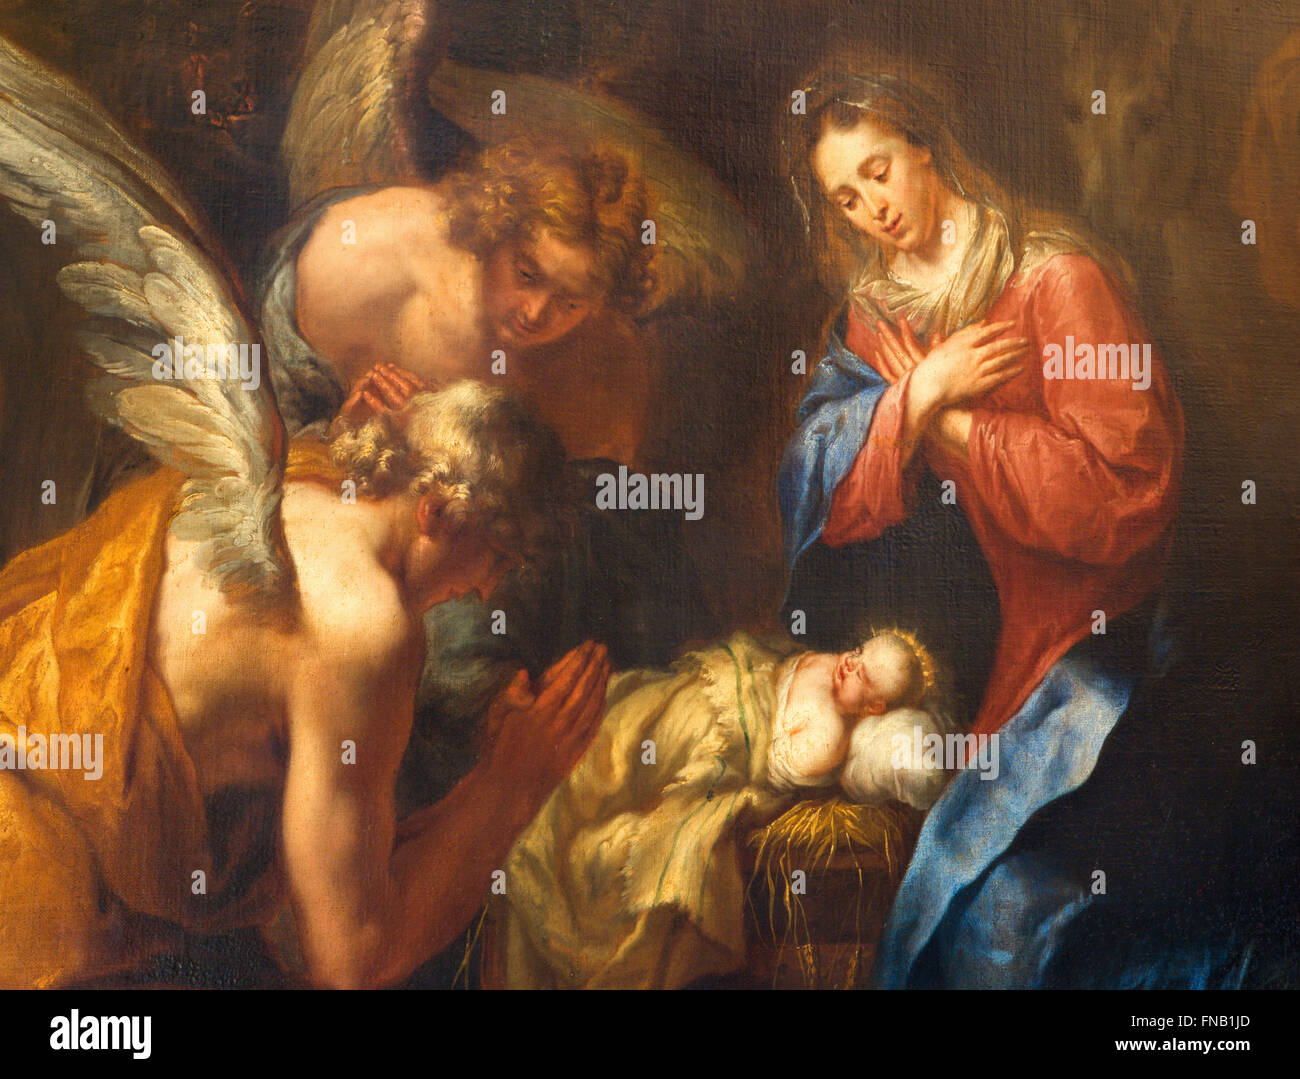 Anvers, Belgique - Septembre 5,2013 : Détail de la peinture de la Nativité par Kasper van Opstal (1660 - 1714) dans l'église Saint Charles Borromée. Banque D'Images